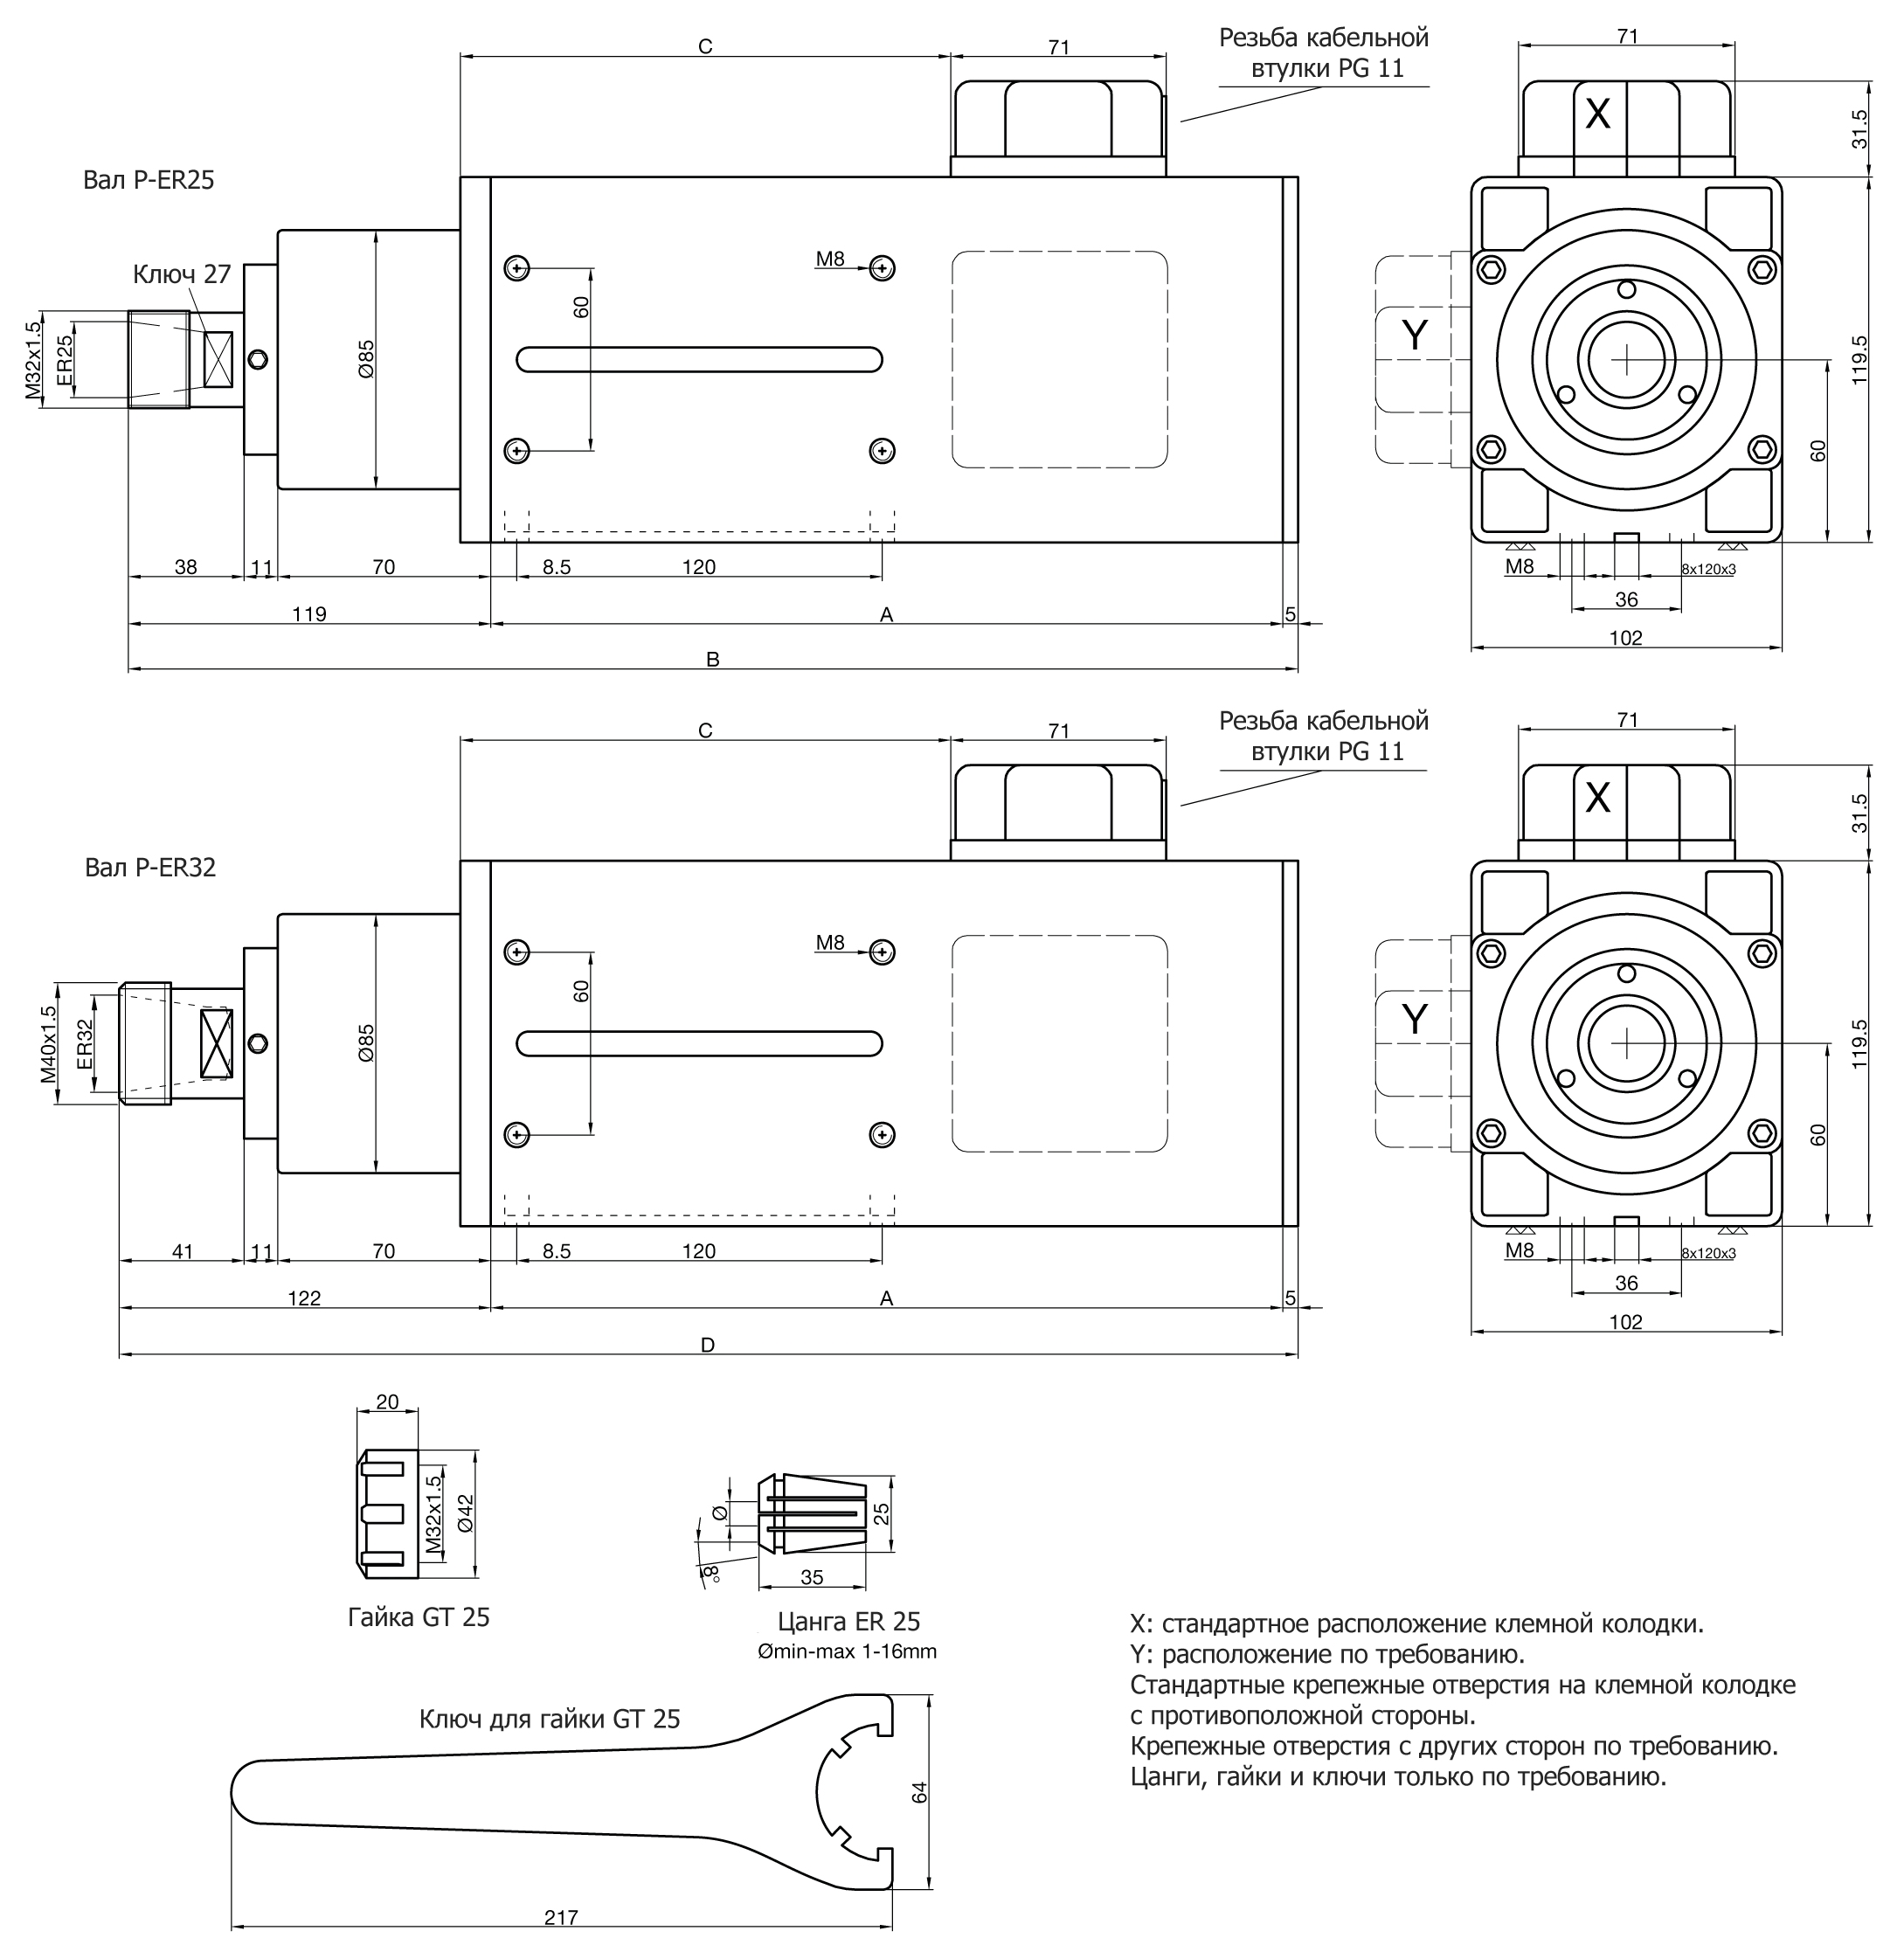 Электрошпиндель Teknomotor серии C51-60, фото 3